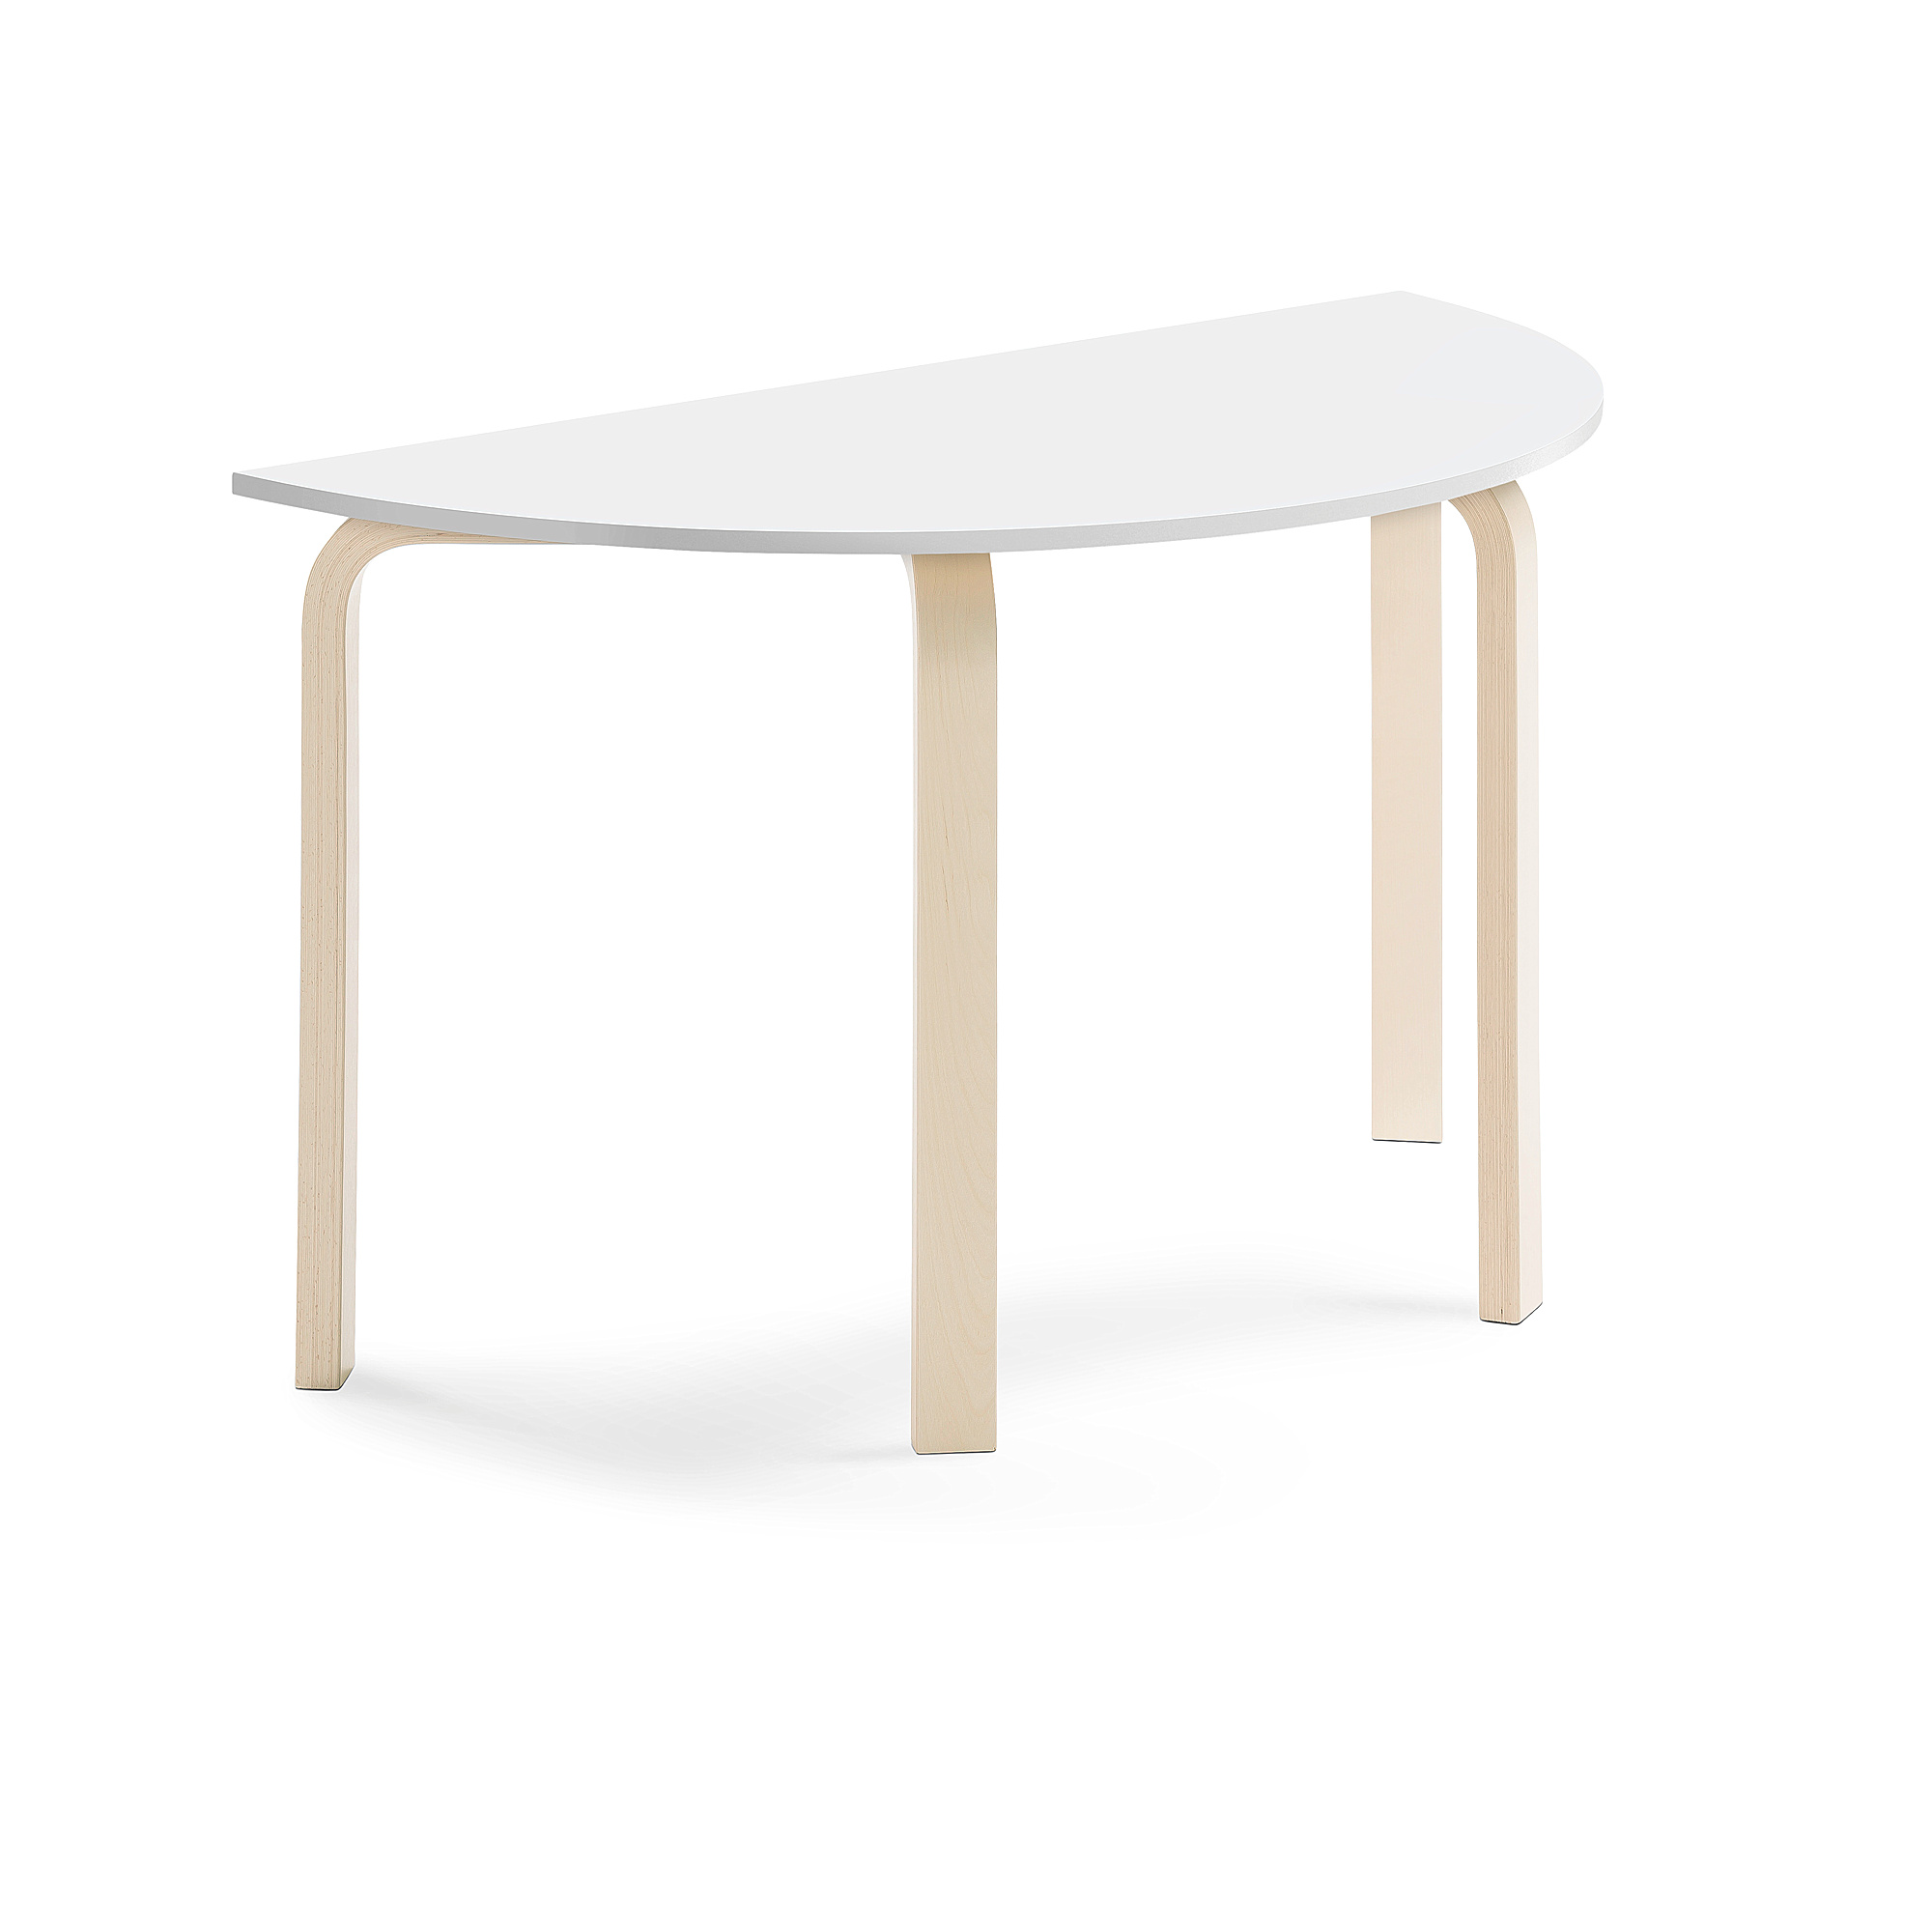 Stůl ELTON, půlkruh, 1200x600x710 mm, bříza, akustická HPL deska, bílá